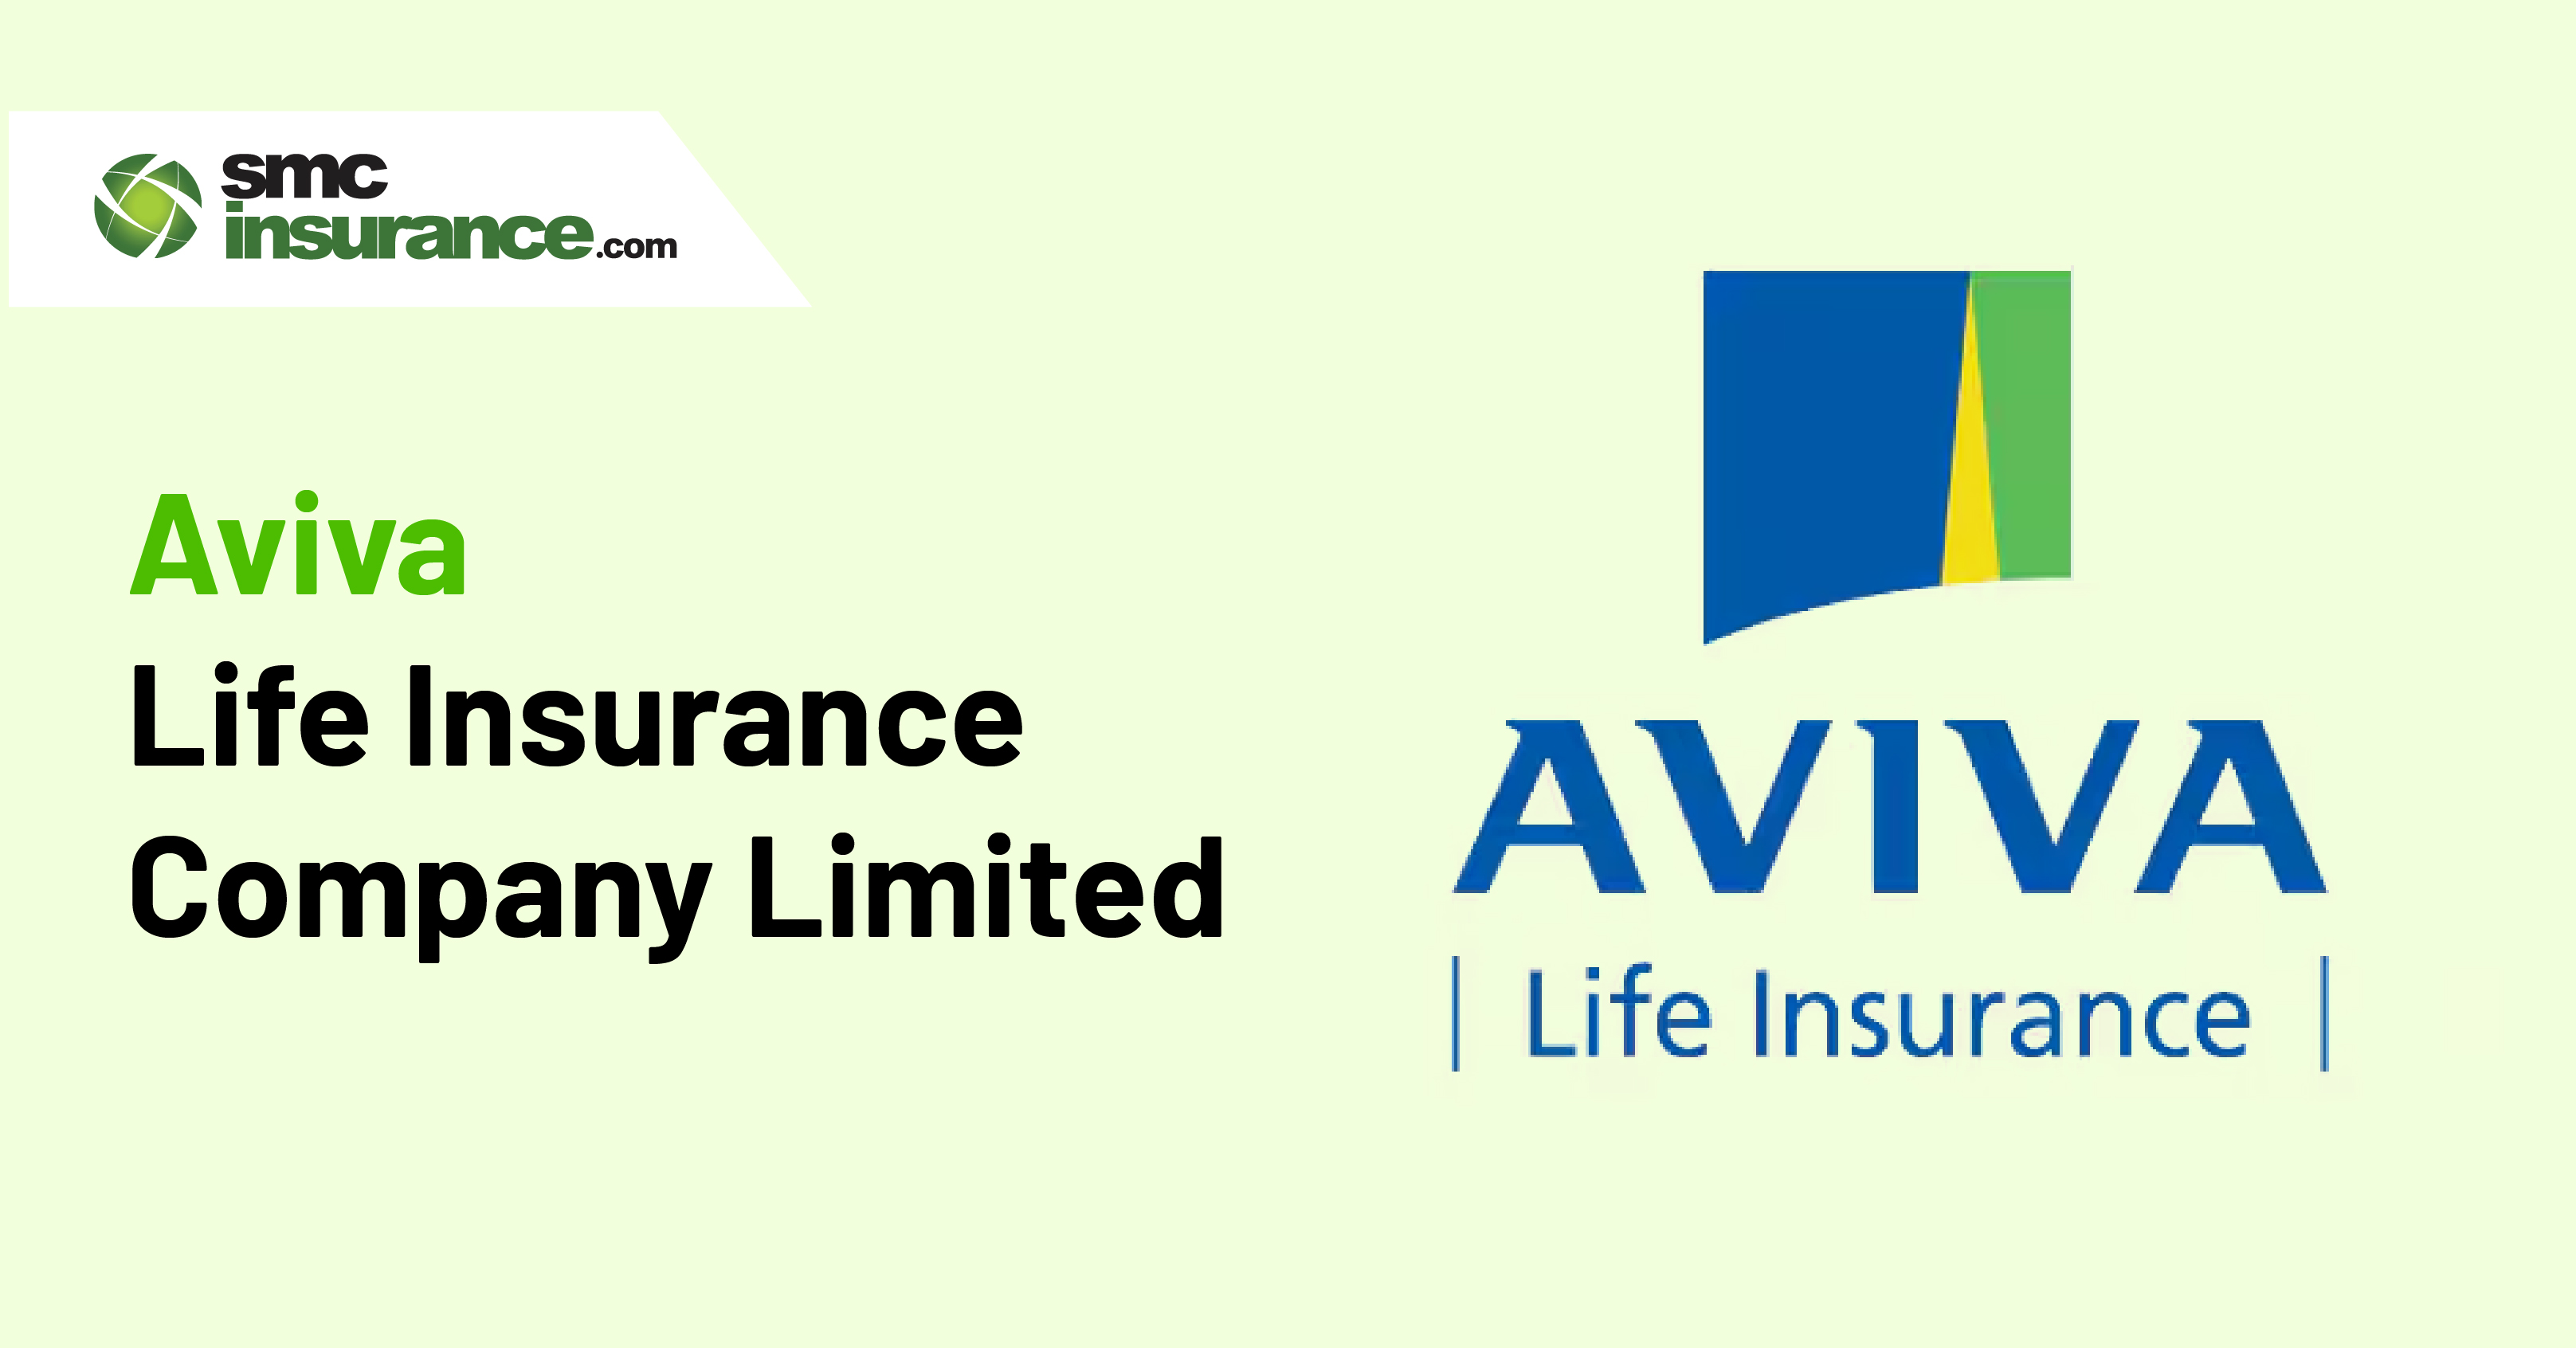 Aviva Life Insurance Company Limited